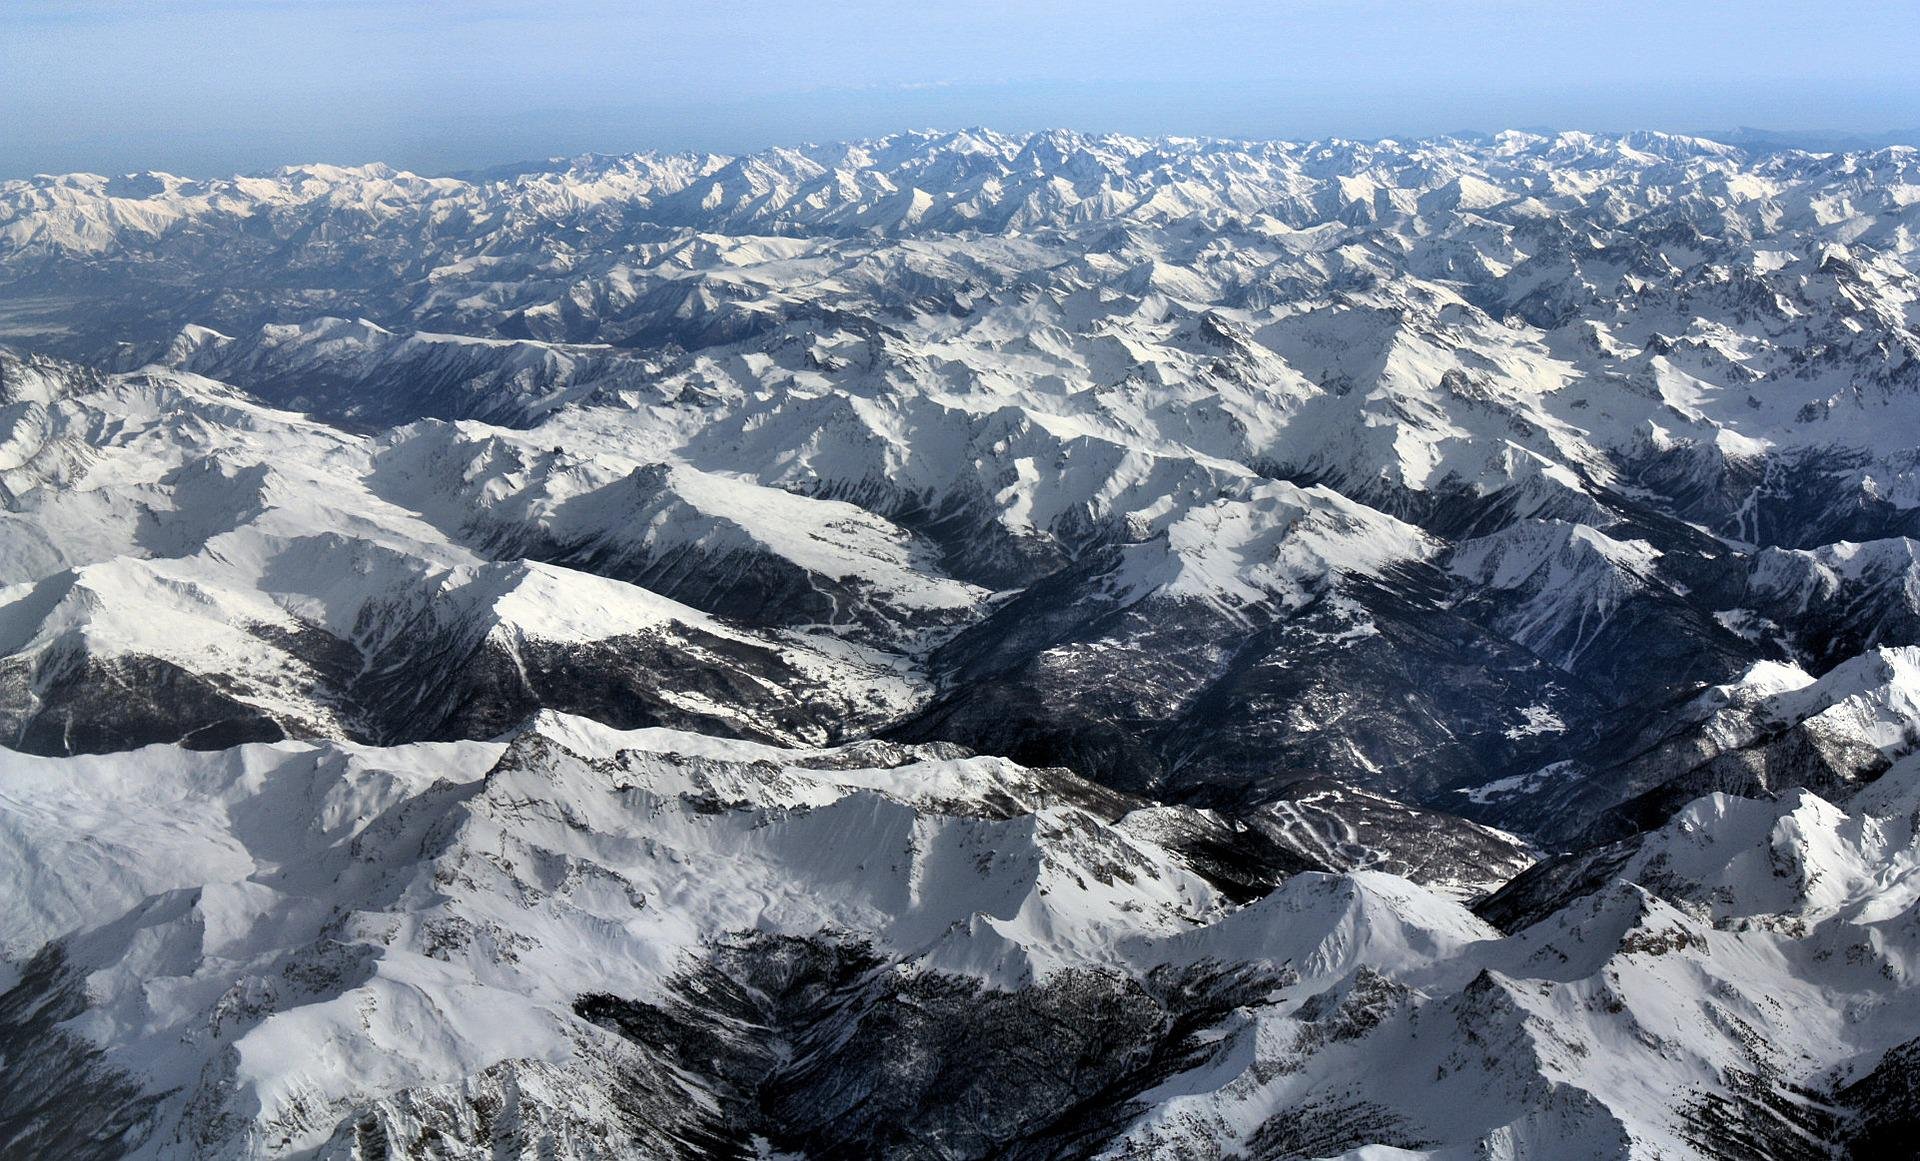 Rischio crollo ghiacciai, assessore Piemonte: “Al lavoro per un inventario delle zone critiche”